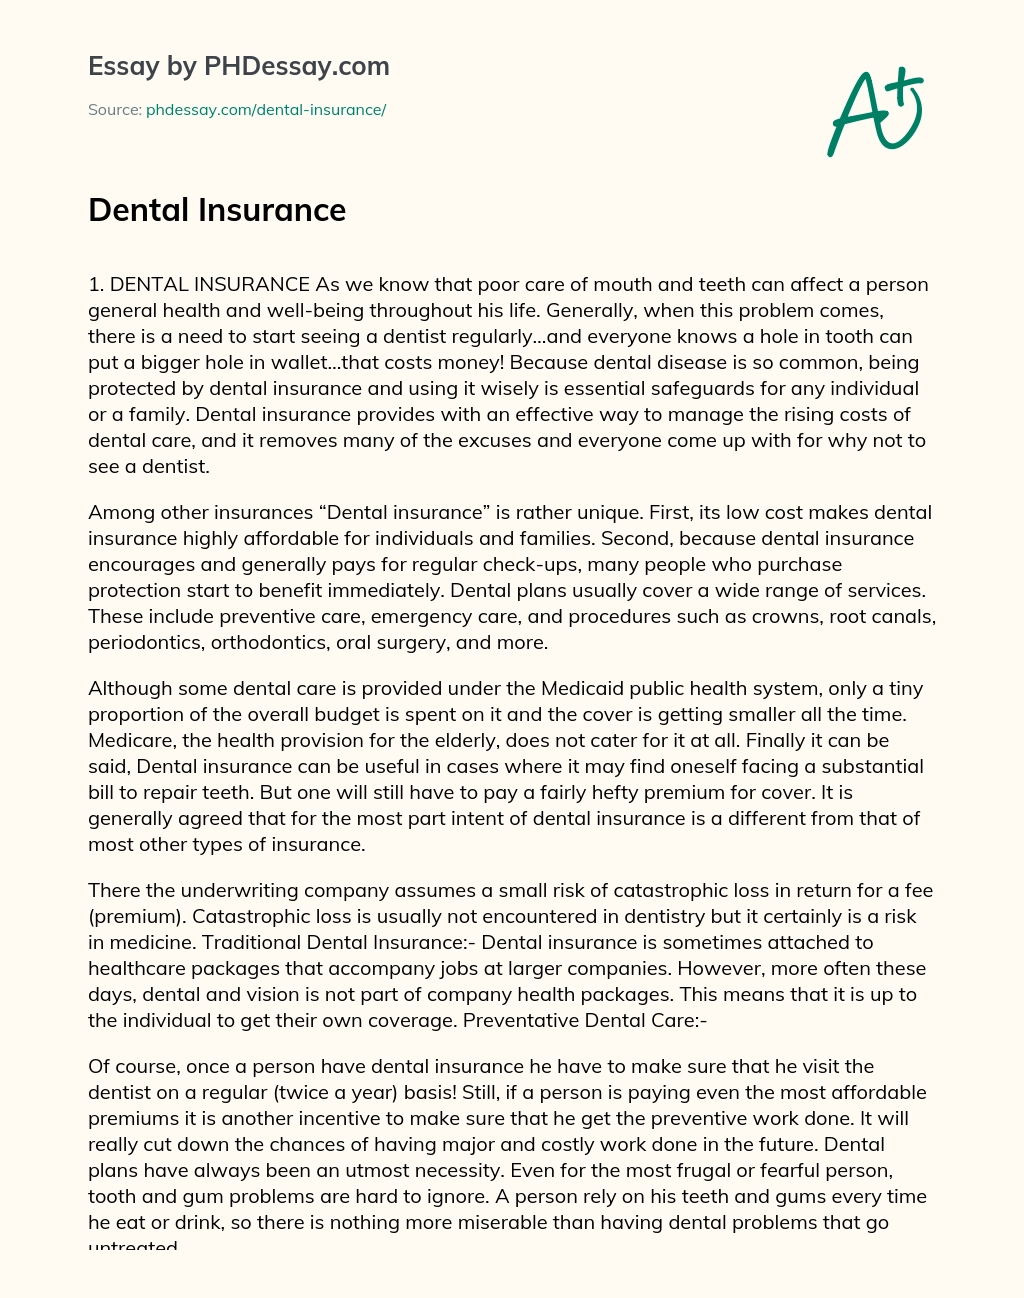 Dental Insurance essay